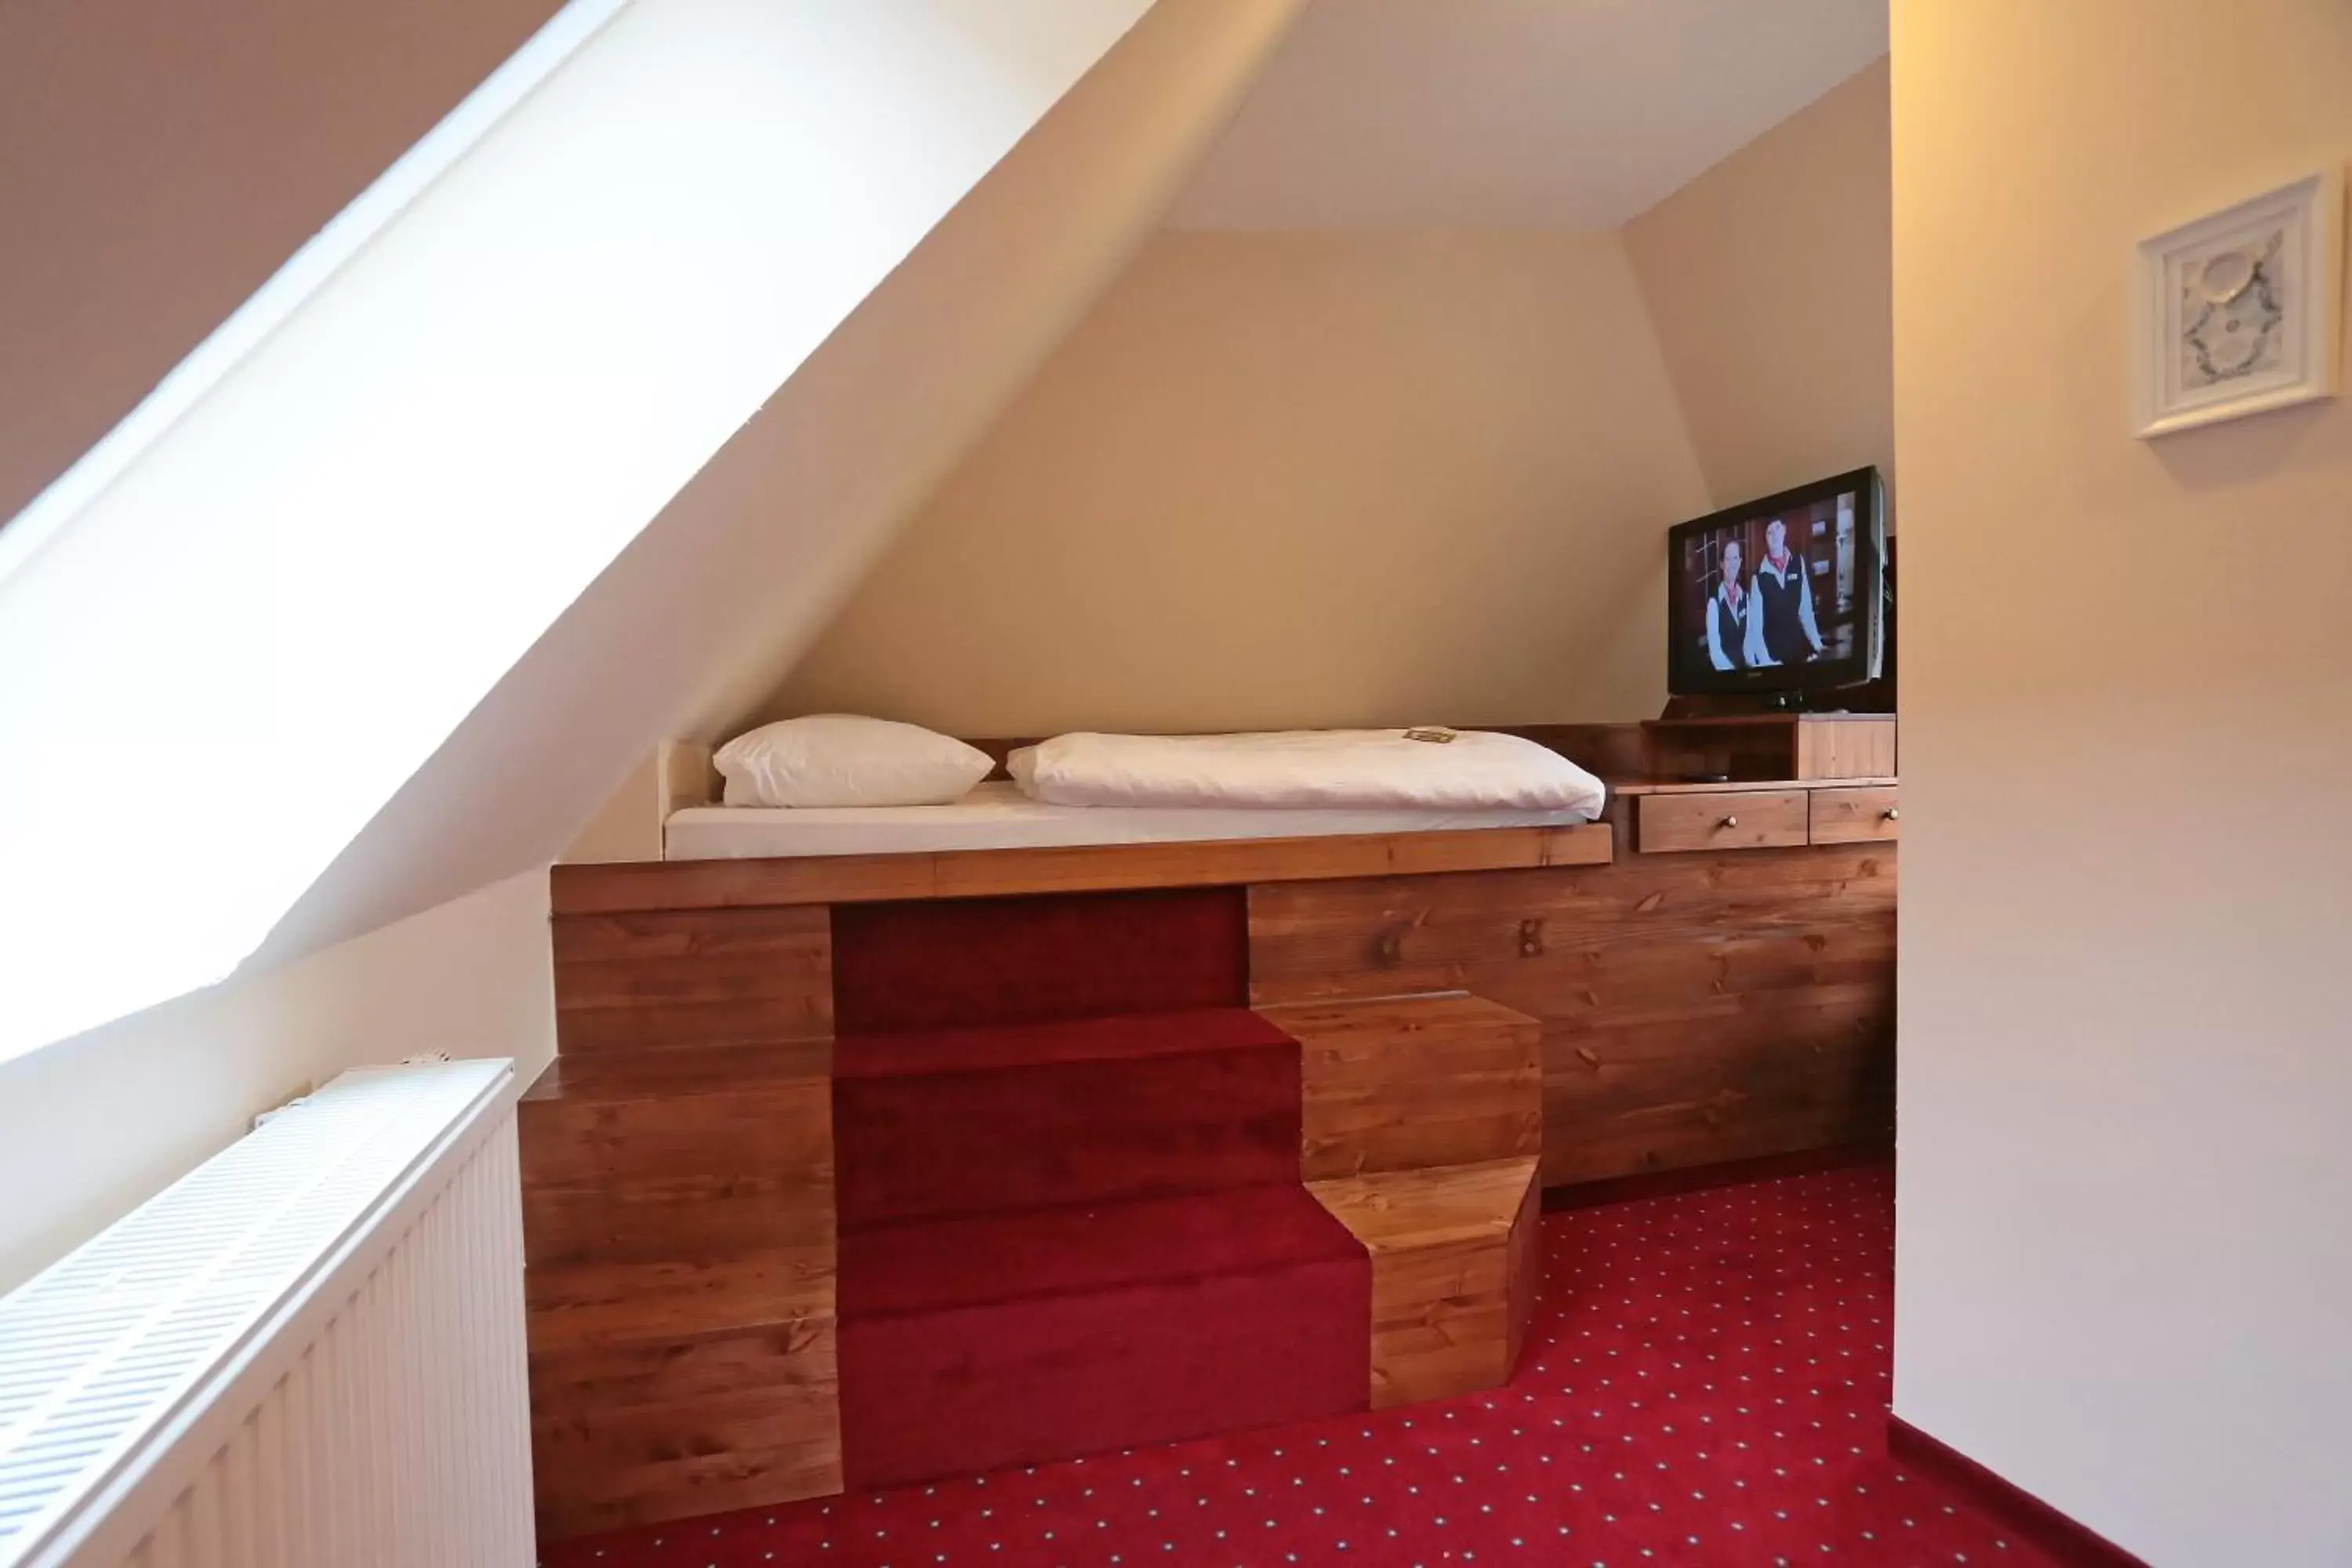 Bed in Romantik Hotel Scheelehof Stralsund